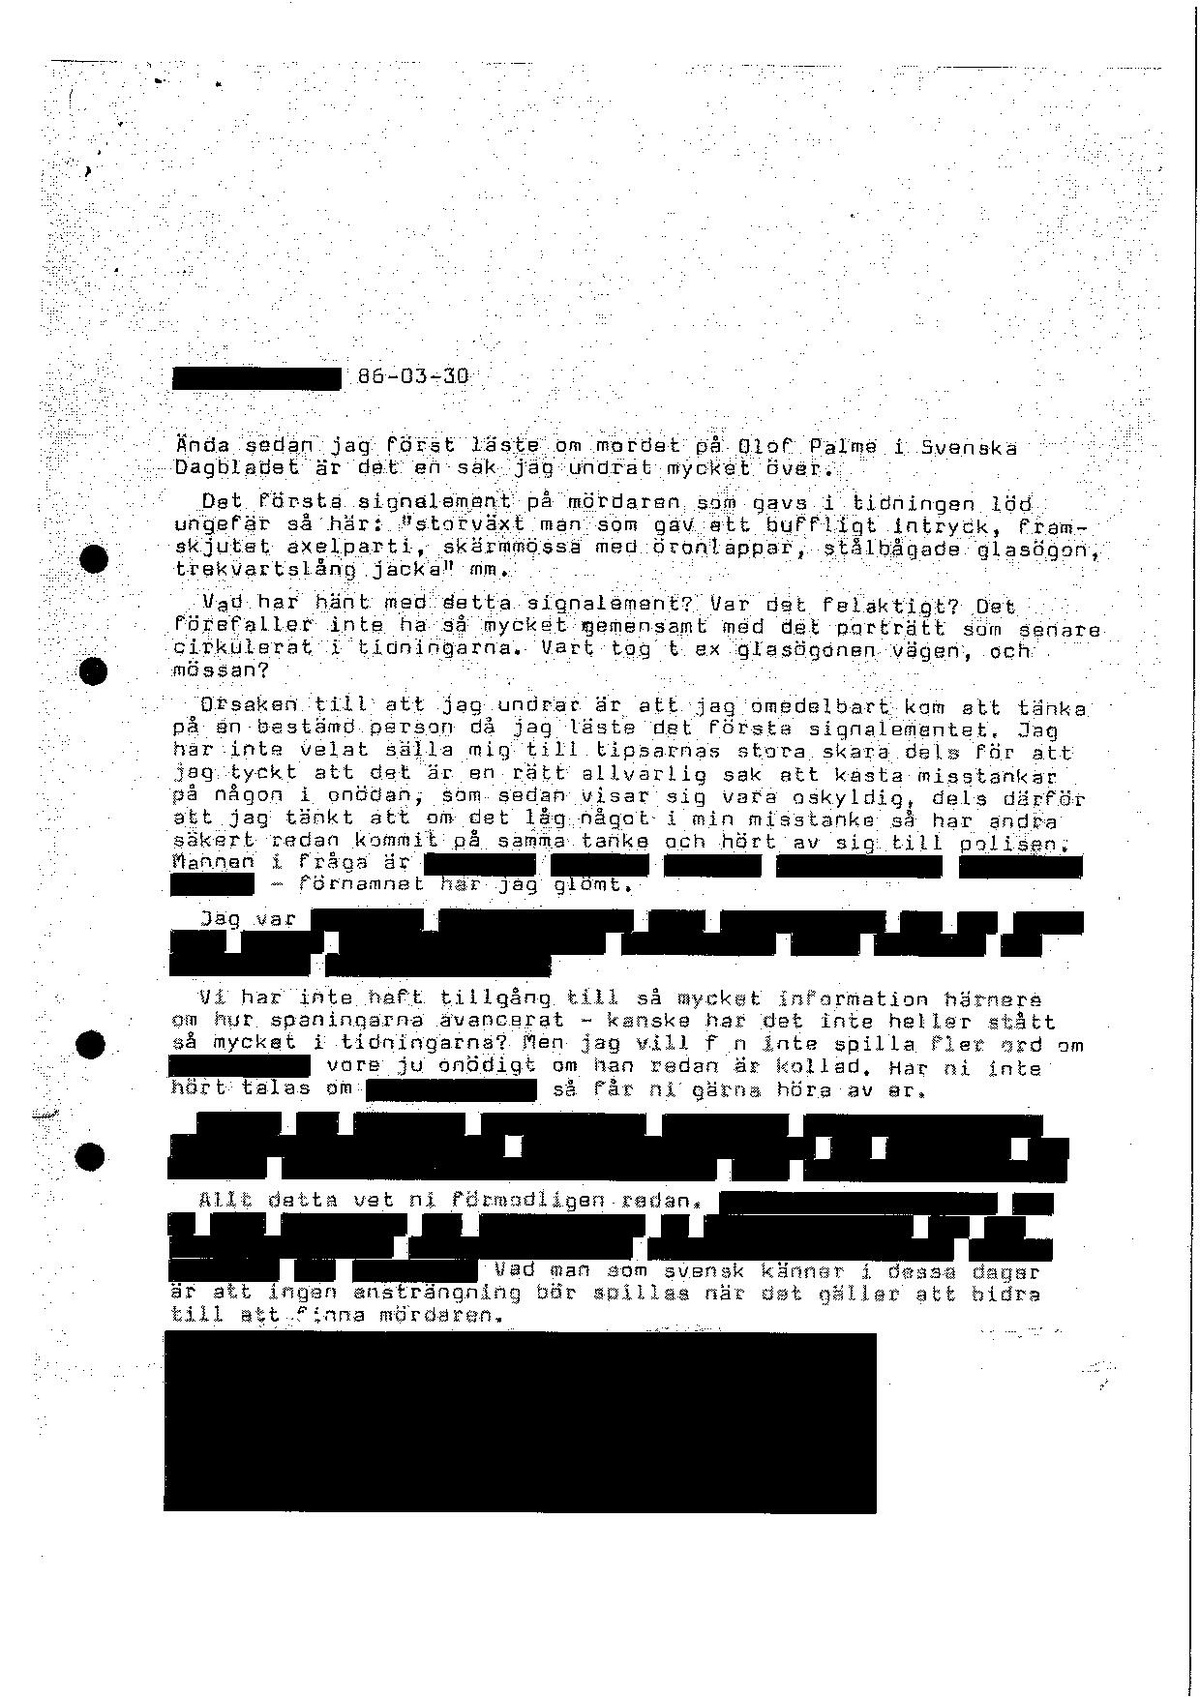 Pol-1986-04-16 D4479-00 tips om person som kan ha med mordet att göra.pdf